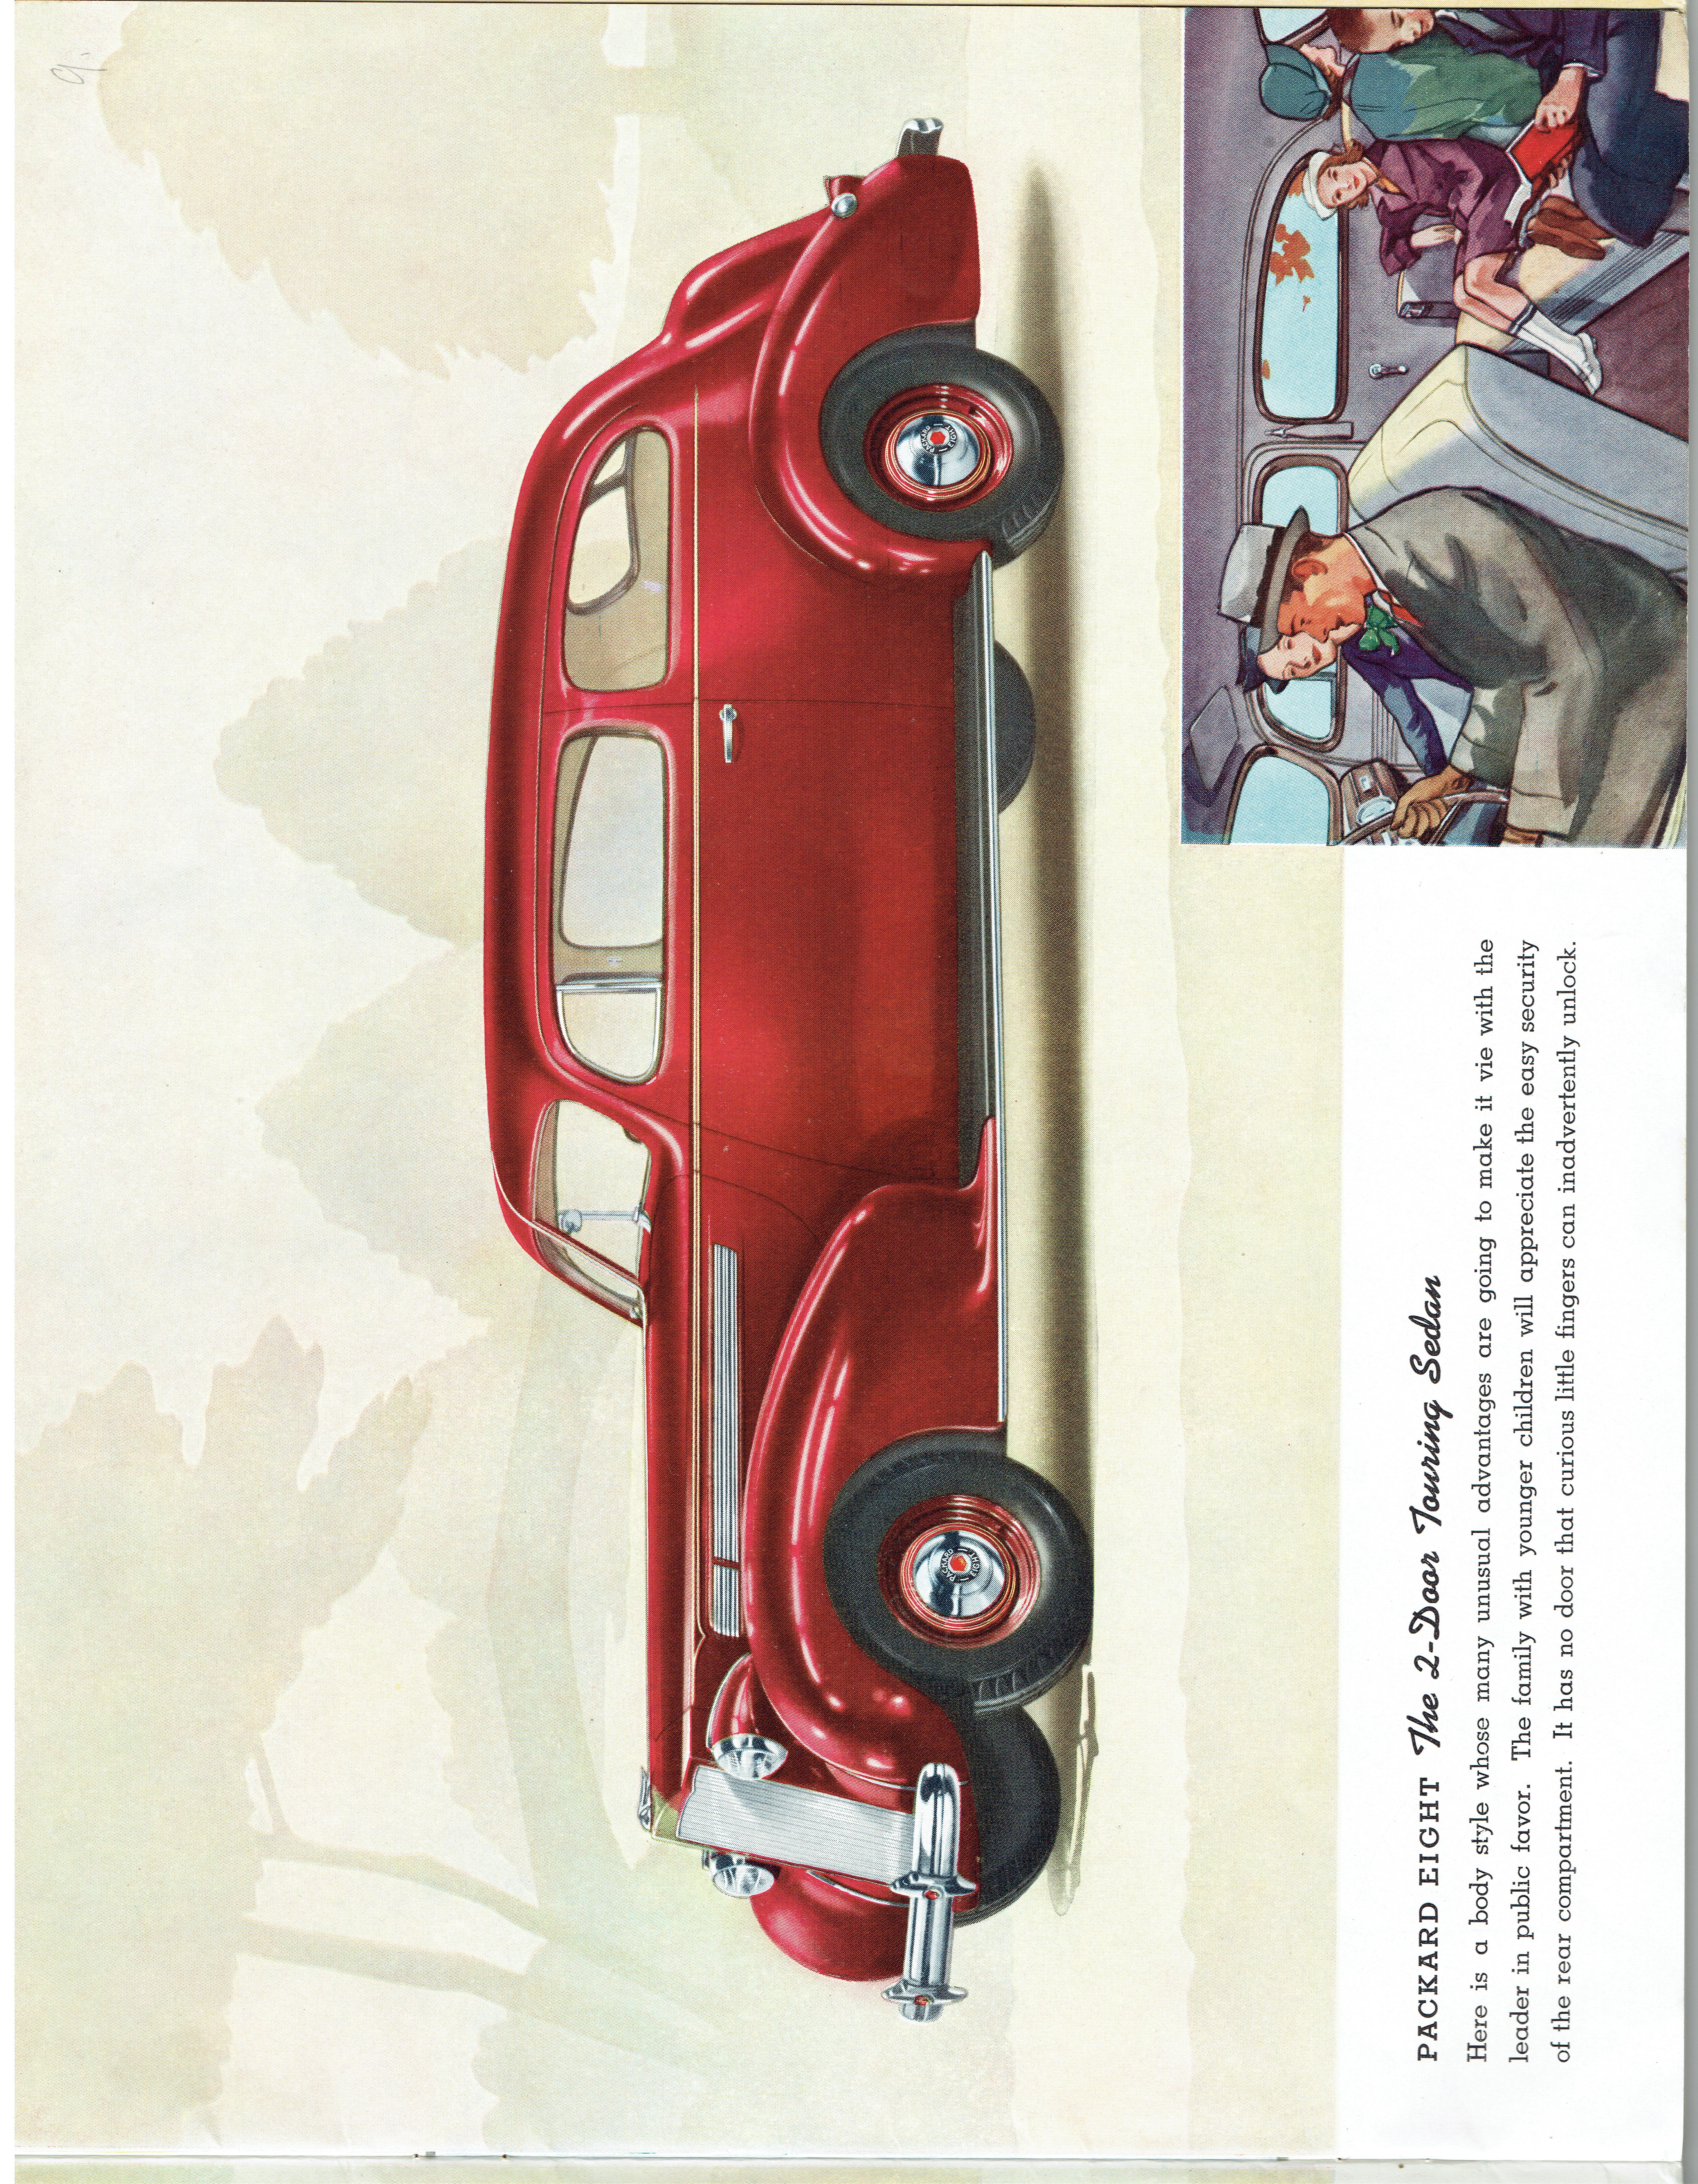 1938 Packard (11)